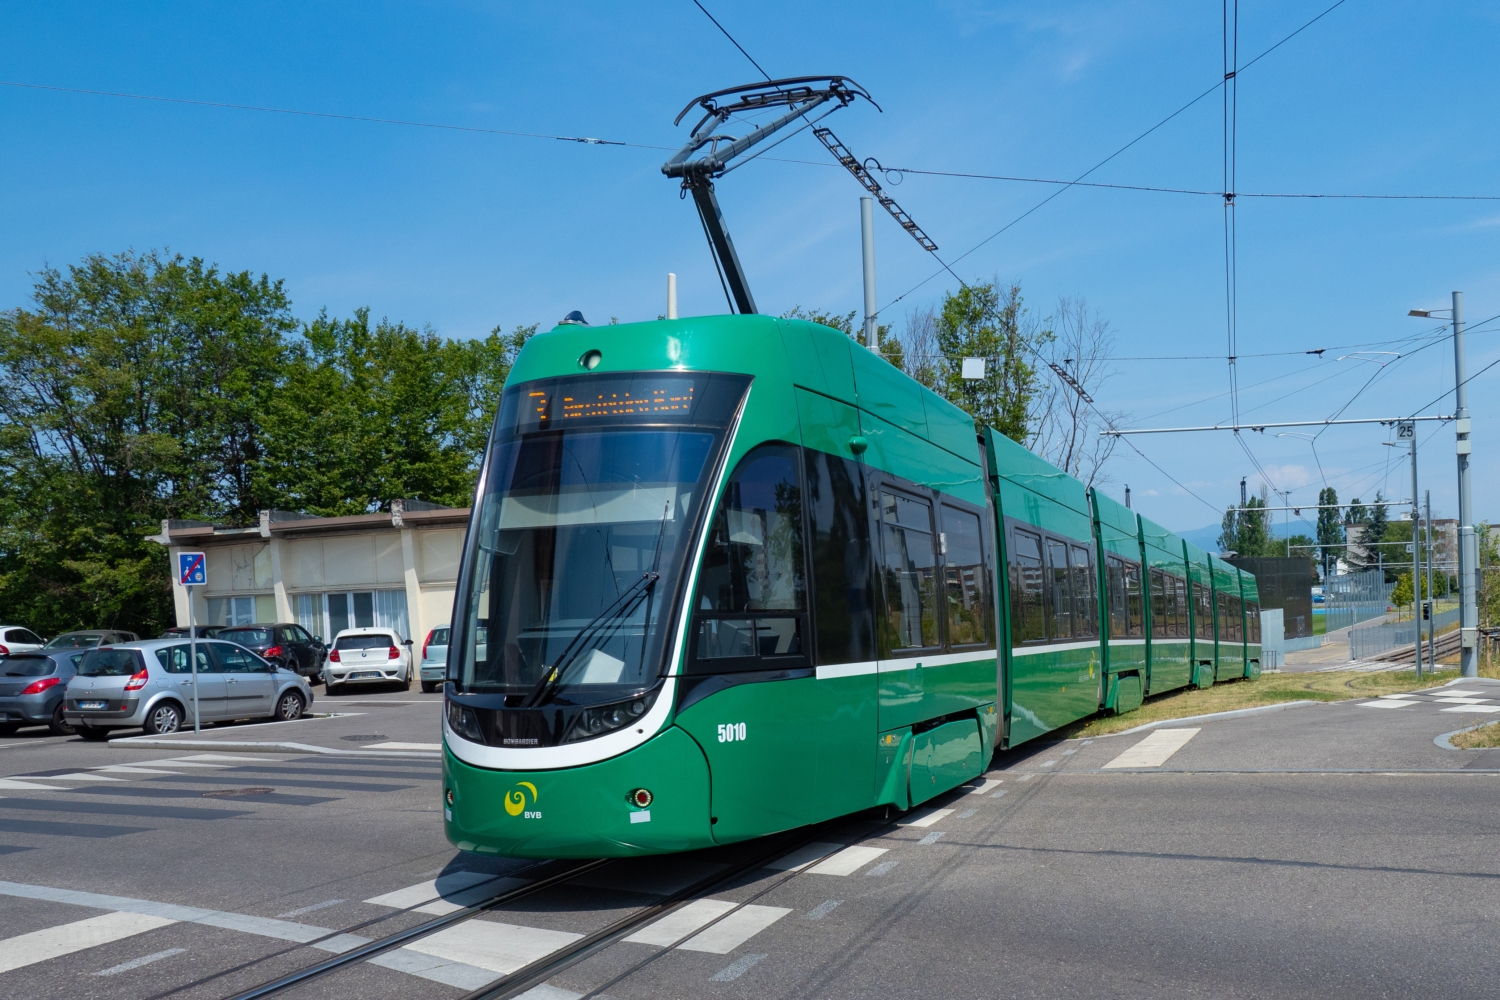 Tramvají Flexity 2 z produkce Bombardieru bychom napočítali v Basileji 61. 23 dalších již s logem Alstomu do města patrně nedorazí. (foto: Markus Eigenheer)